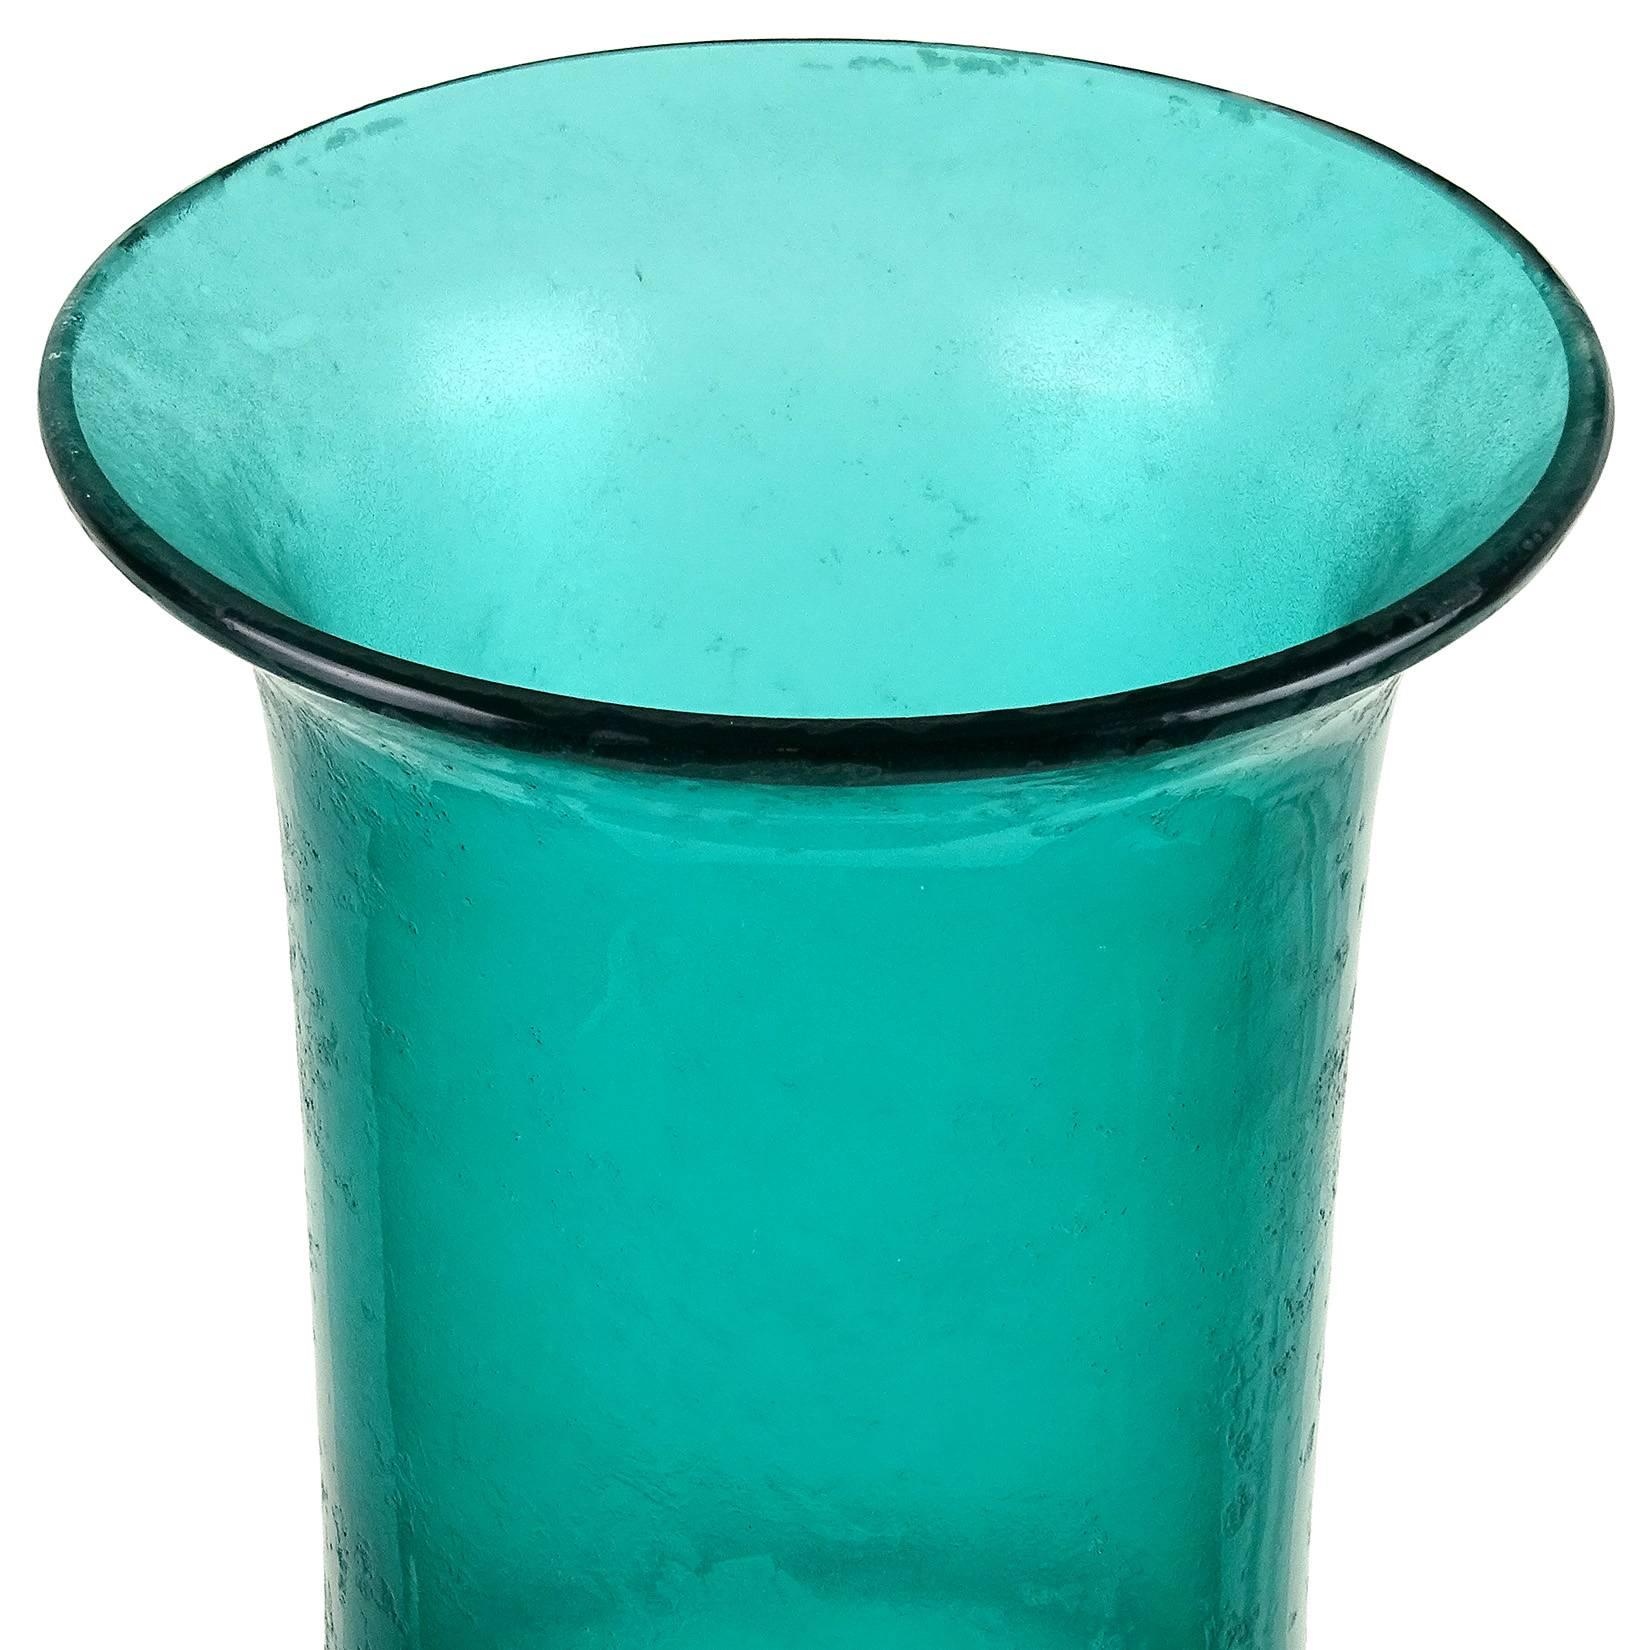 Magnifique grand vase d'art italien vintage en verre soufflé à la main Sommerso aqua green, avec texture Corroso. Créé à la manière du designer Flavio Poli pour la société Seguso Vetri d'Arte. Ce serait une belle pièce d'exposition sur un bureau, un